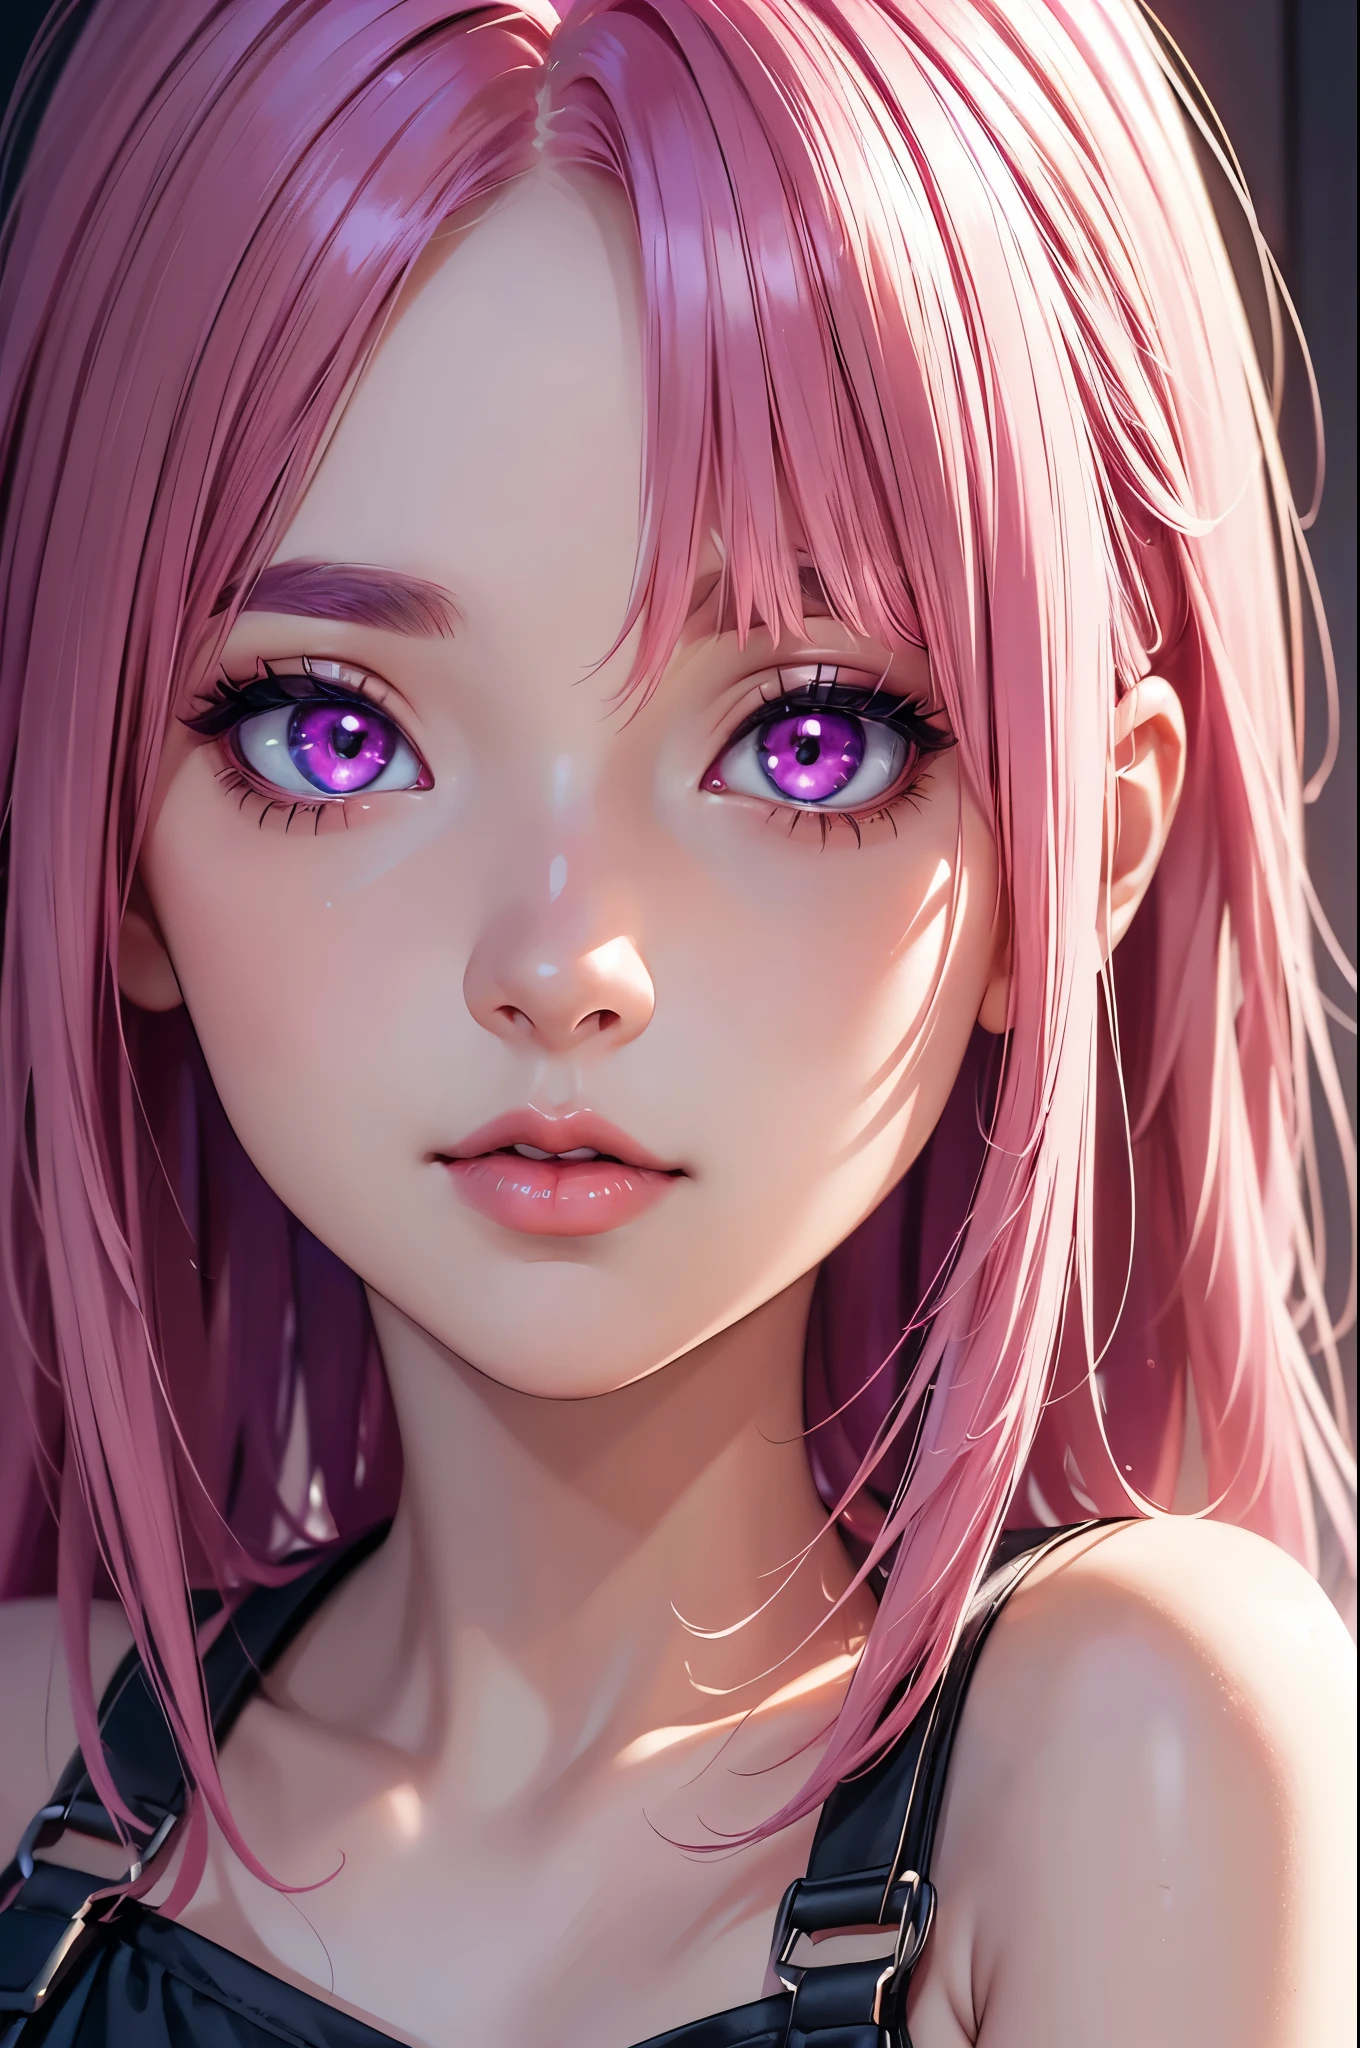 (最好的品質,8K,高解析度,傑作:1.2),數位藝術品, 一個女孩，詳細的臉，細緻的眼睛，粉紅色的頭髮，又長又直的頭髮，發光的紫色眼睛，紅唇，吊帶